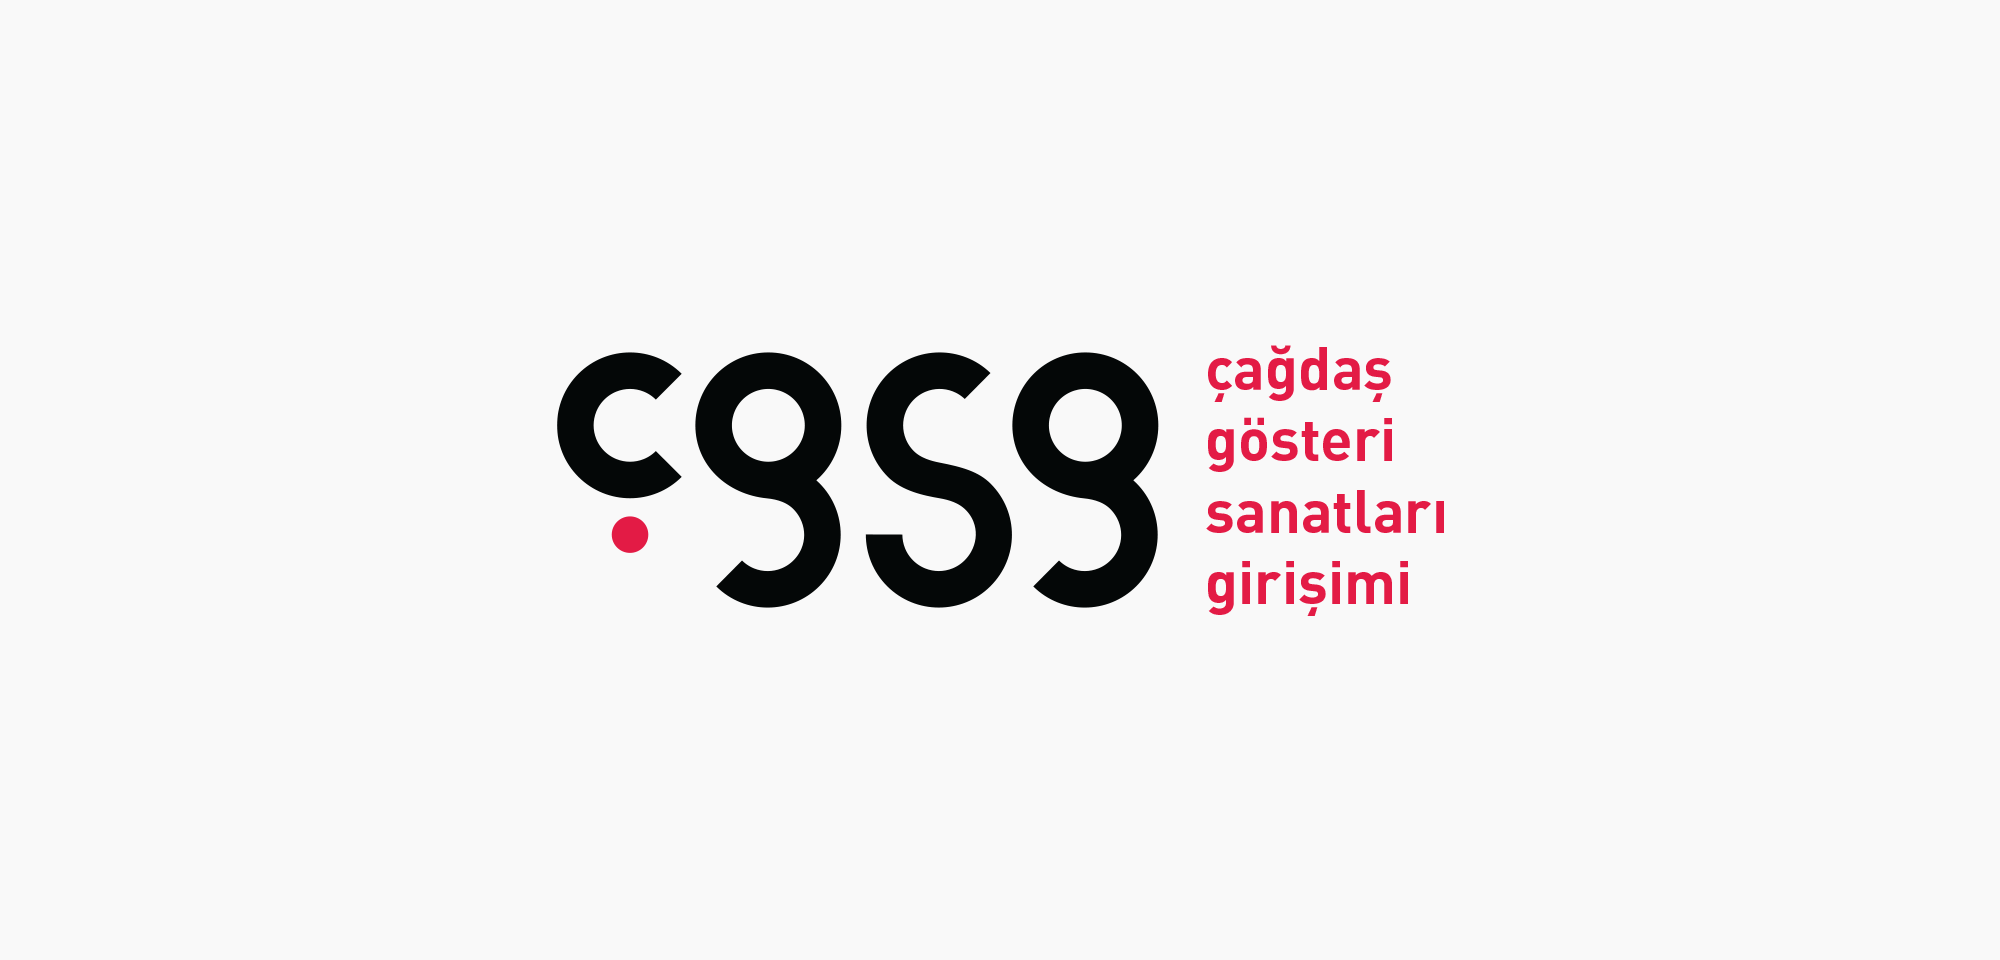 cgsg02-1